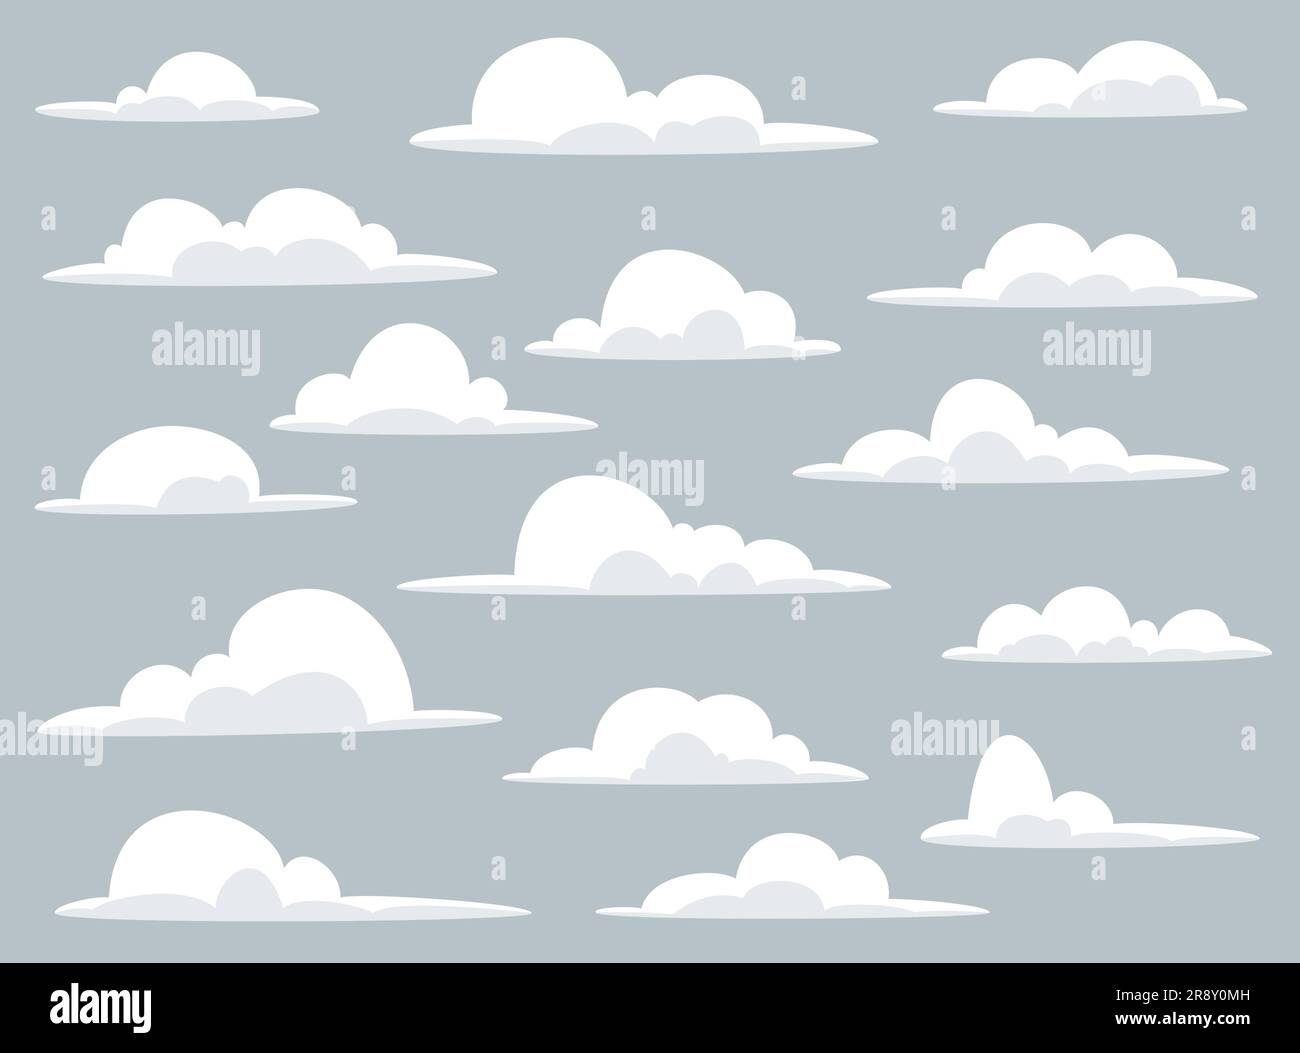 Ensemble de nuages de dessins animés Illustration d'une collection de divers nuages de dessins animés vectoriels sur un fond bleu ciel Illustration de Vecteur